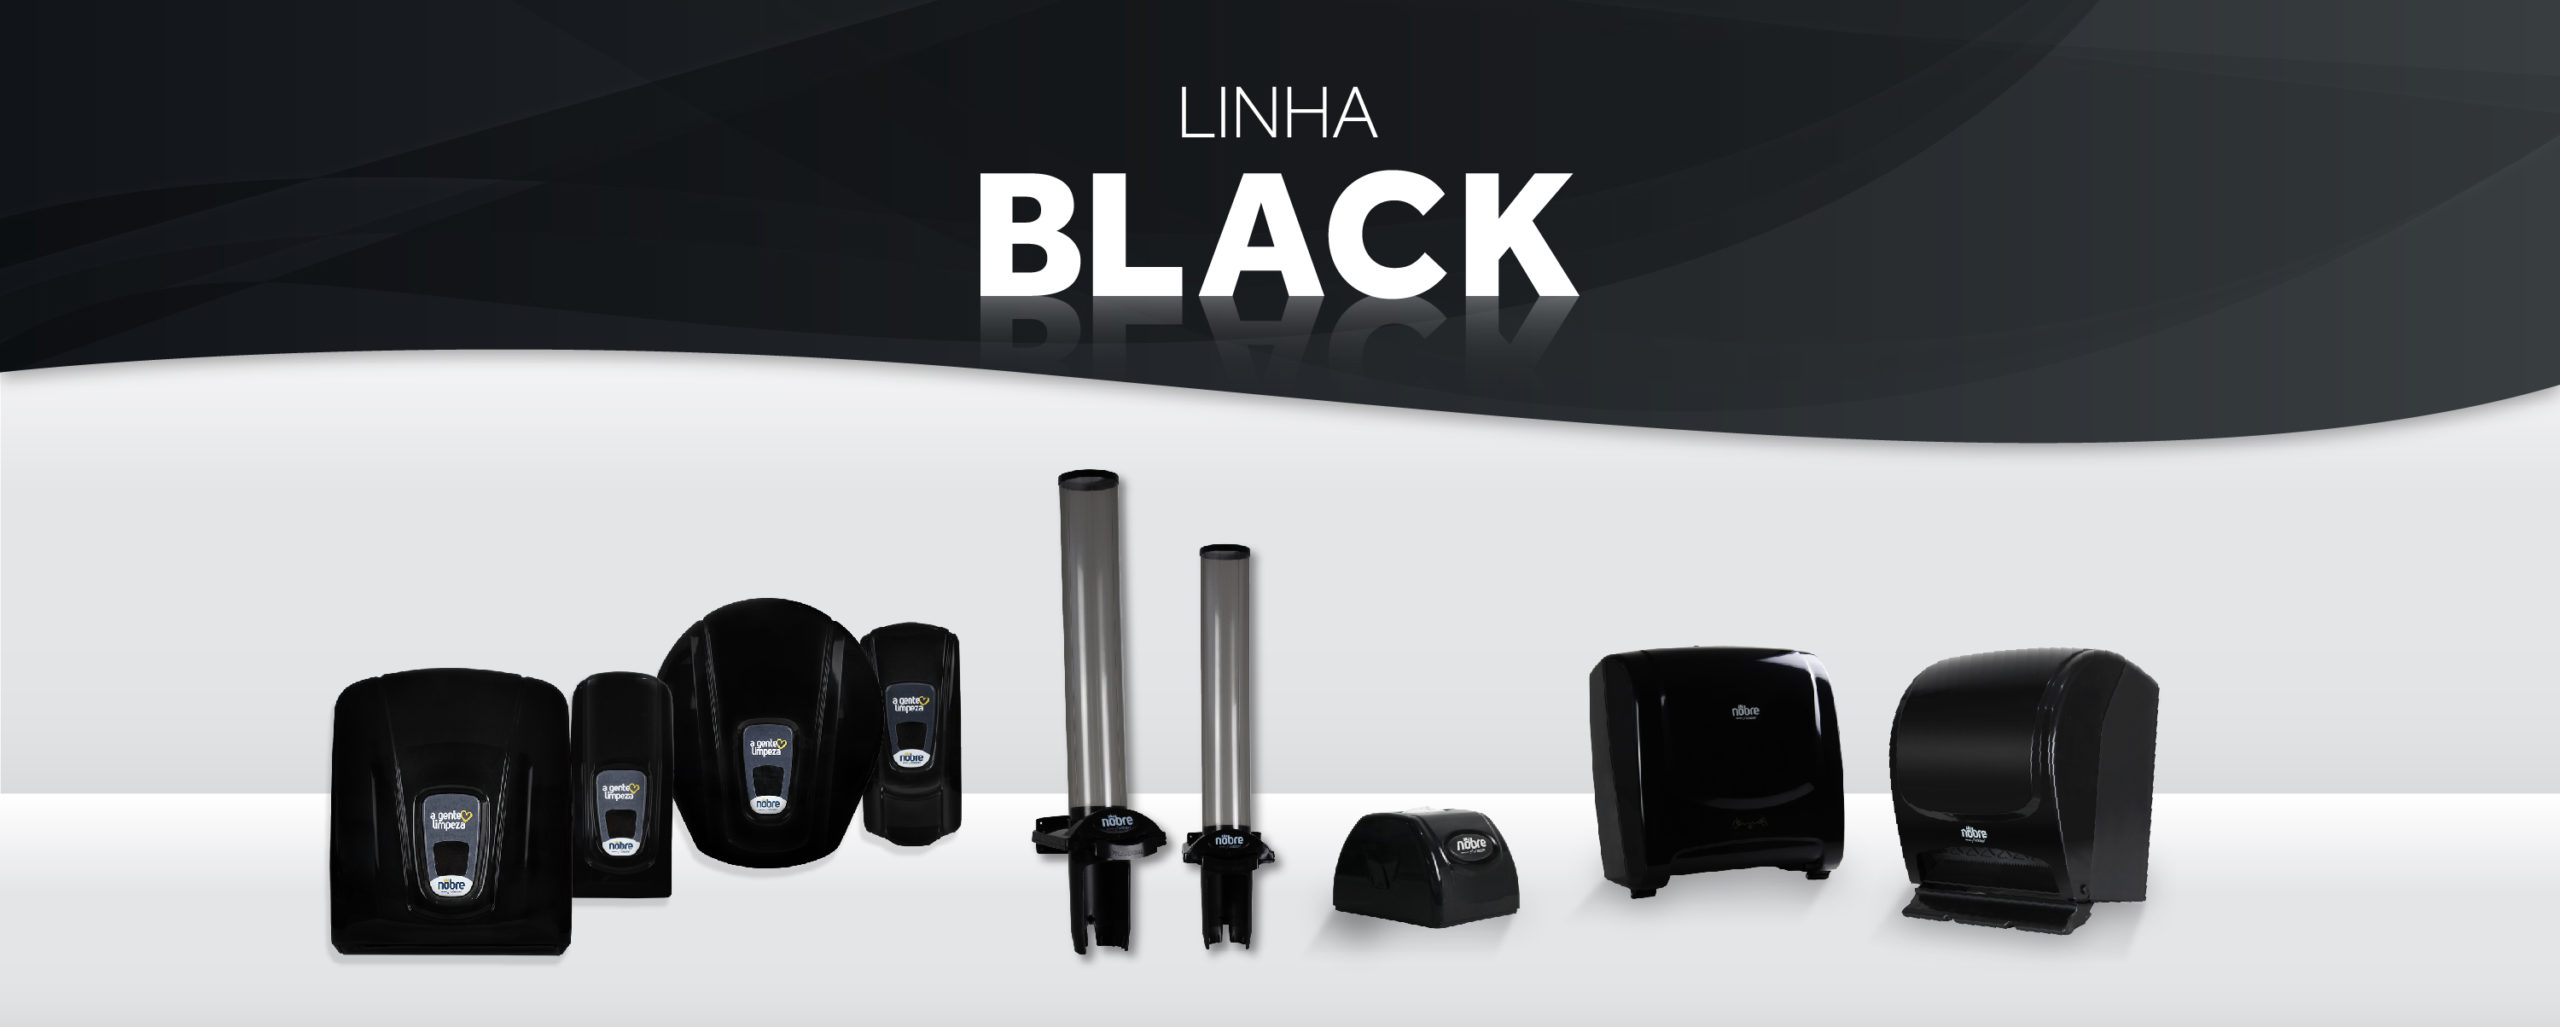 Linha Black: conheça os dispensers pretos da Nobre